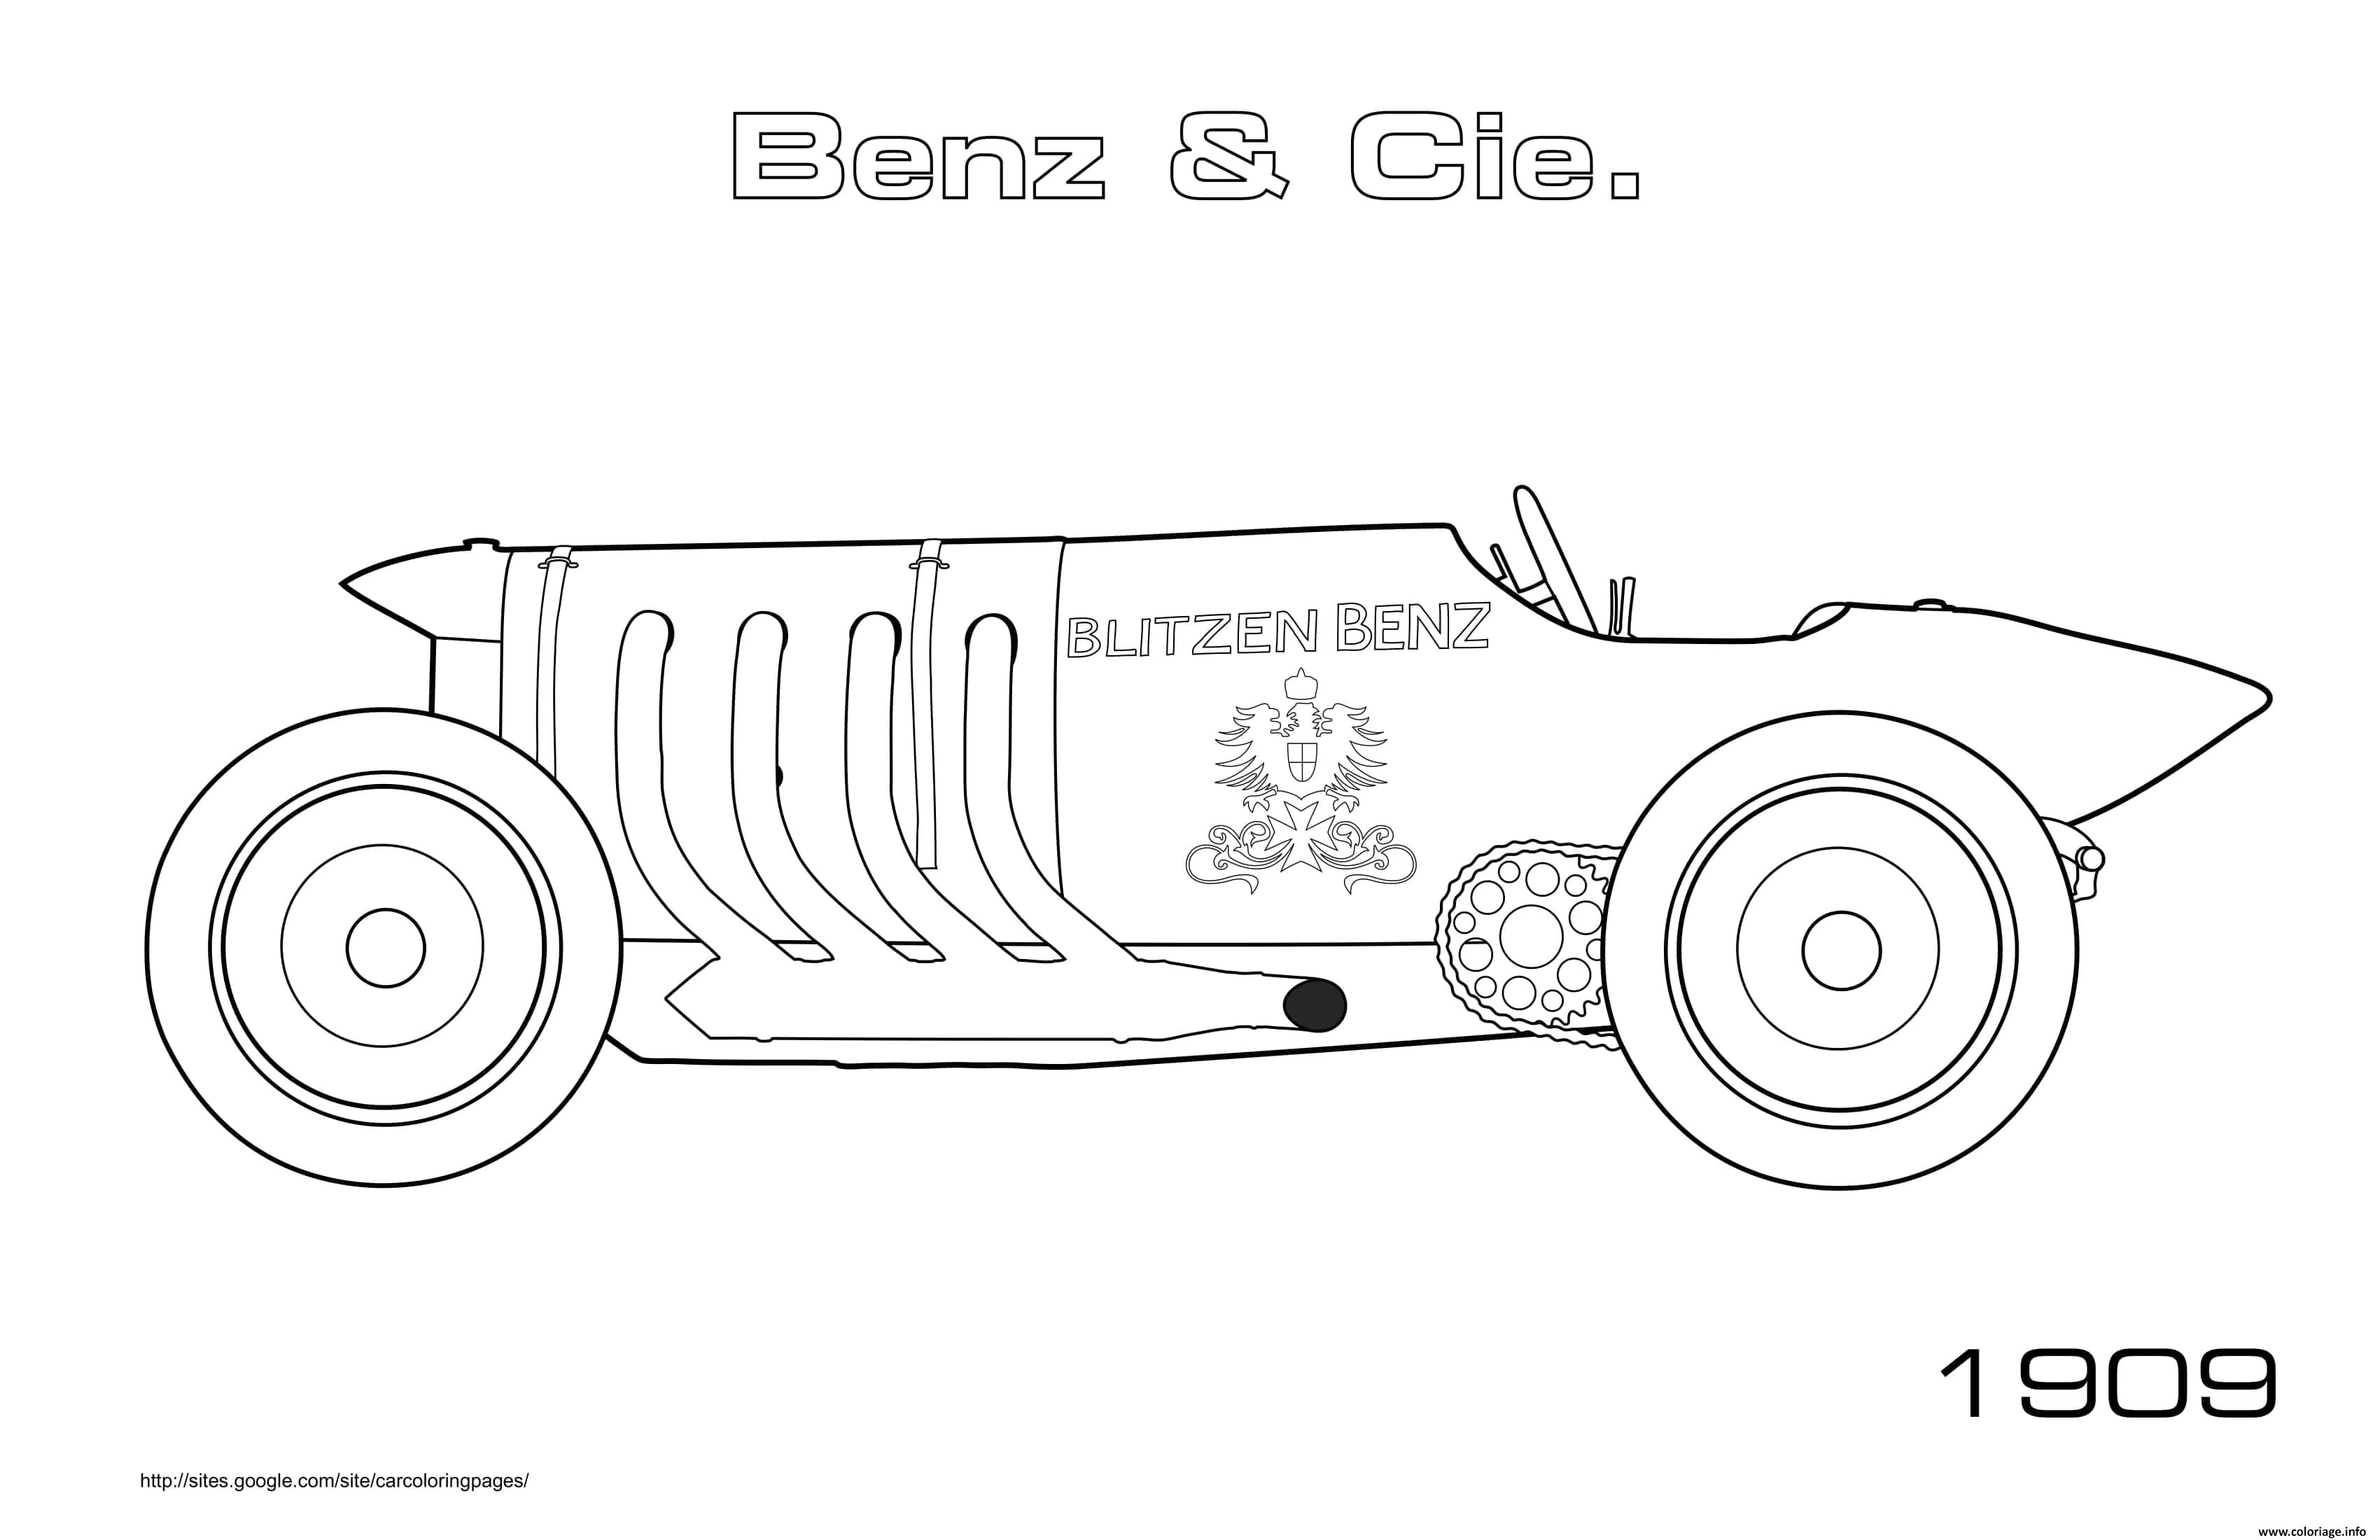 Dessin Old Car Benz Cie Blitzen Benz 1909 Coloriage Gratuit à Imprimer